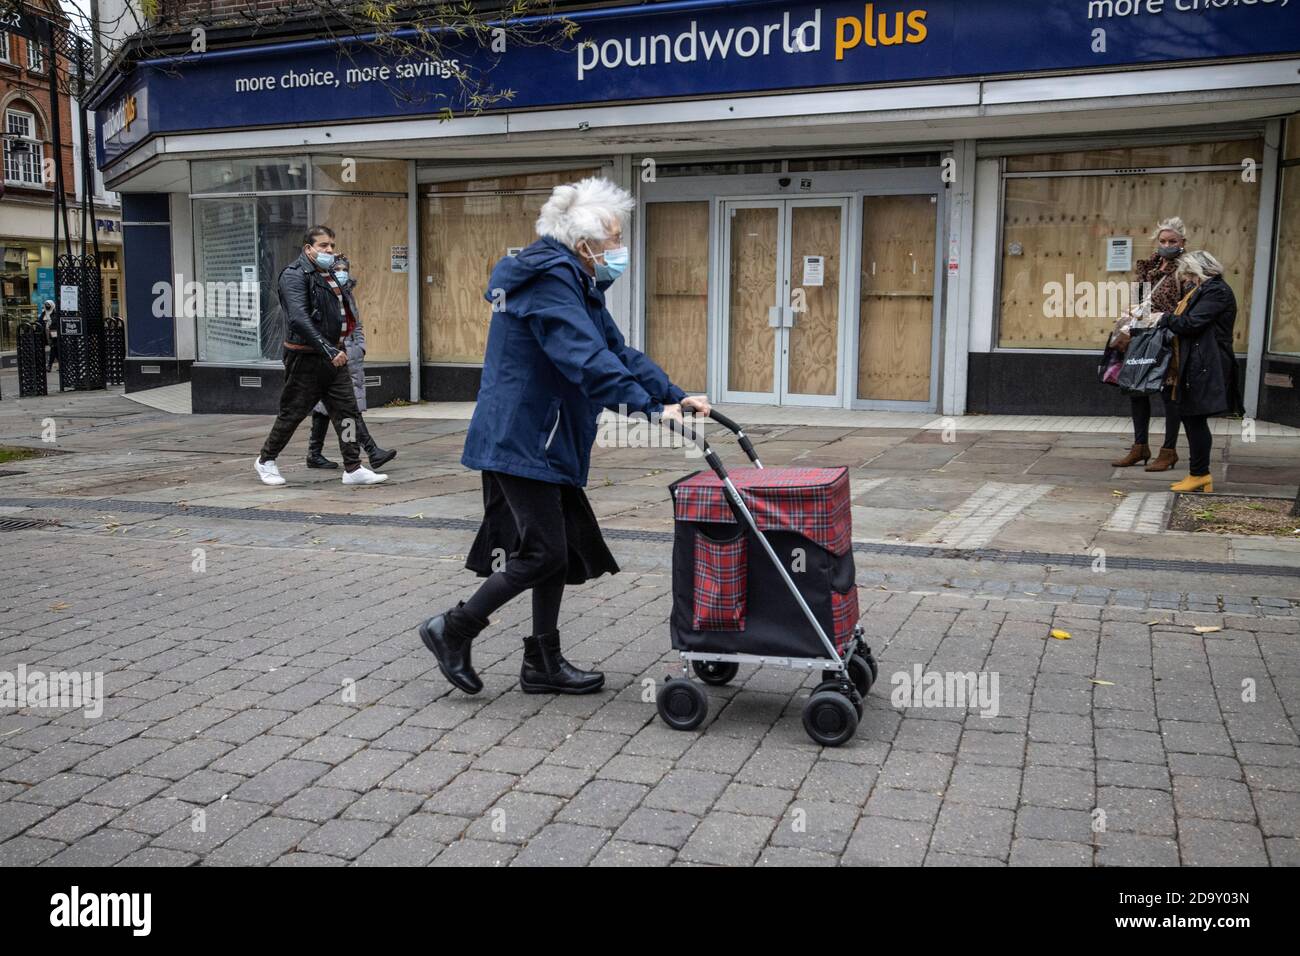 Monté à bord de Poundworld plus, montrant des signes de récession dans les rues hautes de Grande-Bretagne, Gravesend, nord-ouest du Kent, Angleterre, Royaume-Uni Banque D'Images